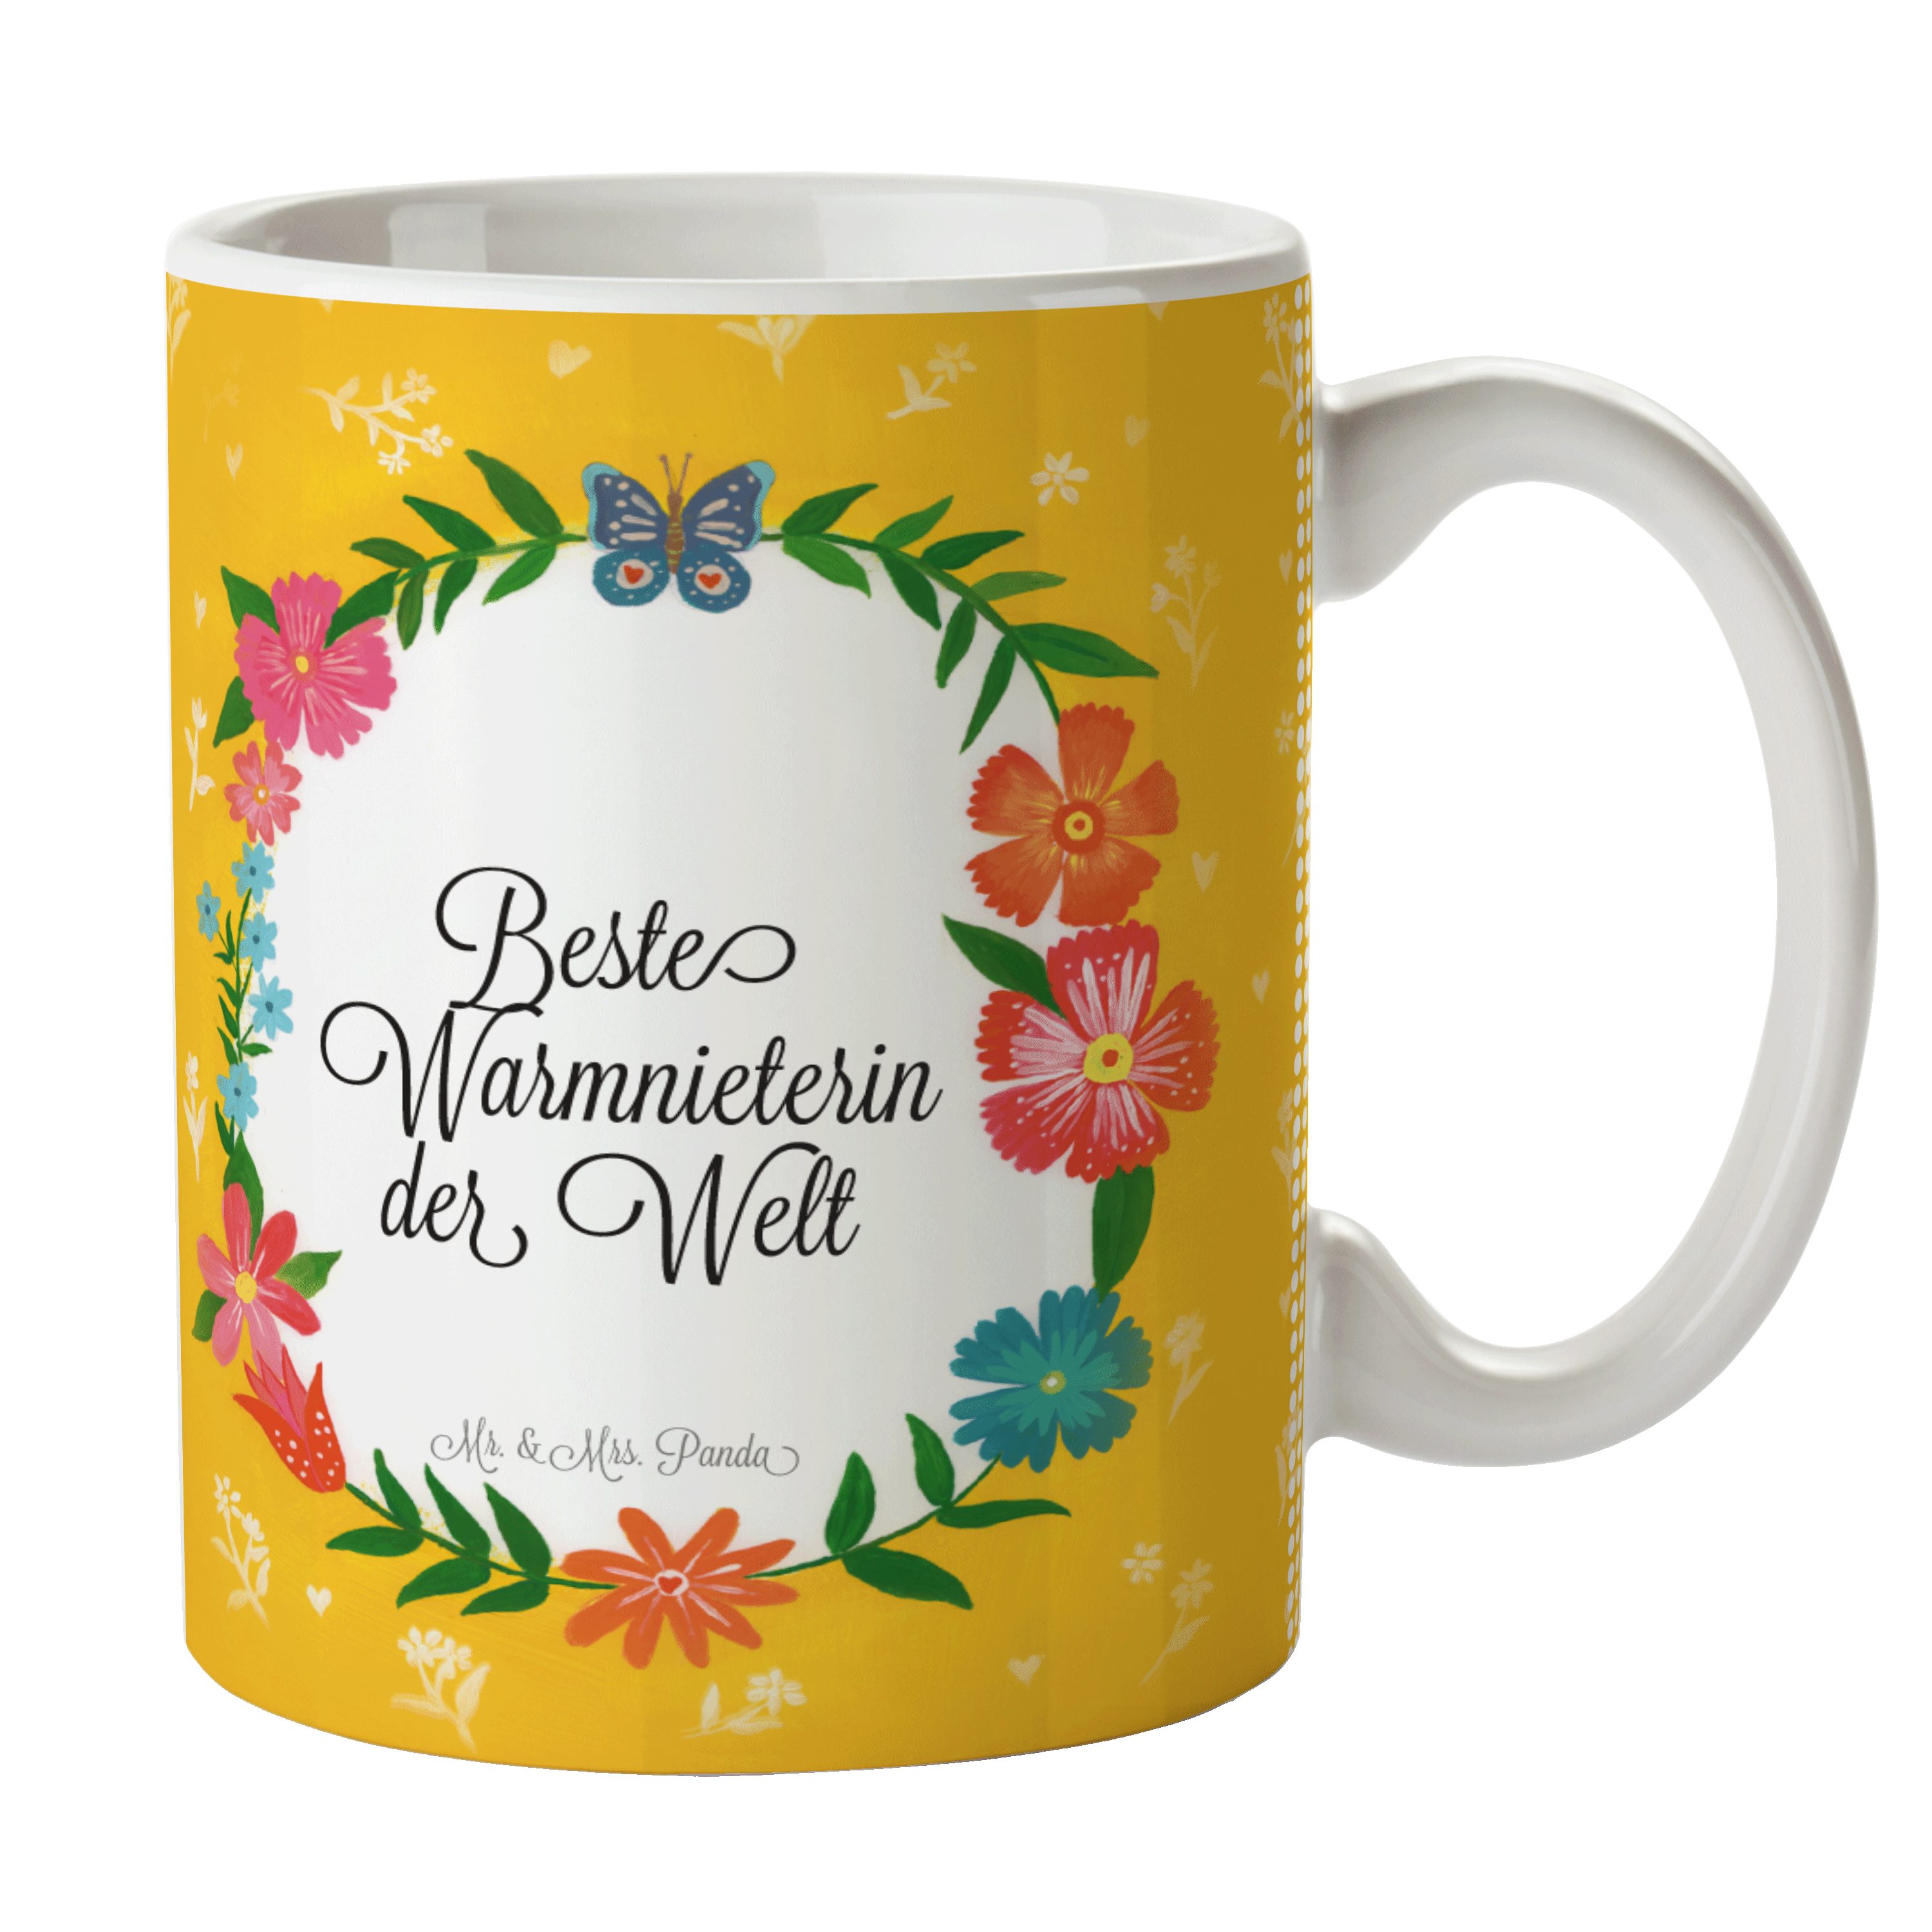 Mr. & Mrs. Panda Kaffe, - Gratulation, Sprüche, Geschenk, Warmnieterin Tasse Keramik Abschluss, Tasse